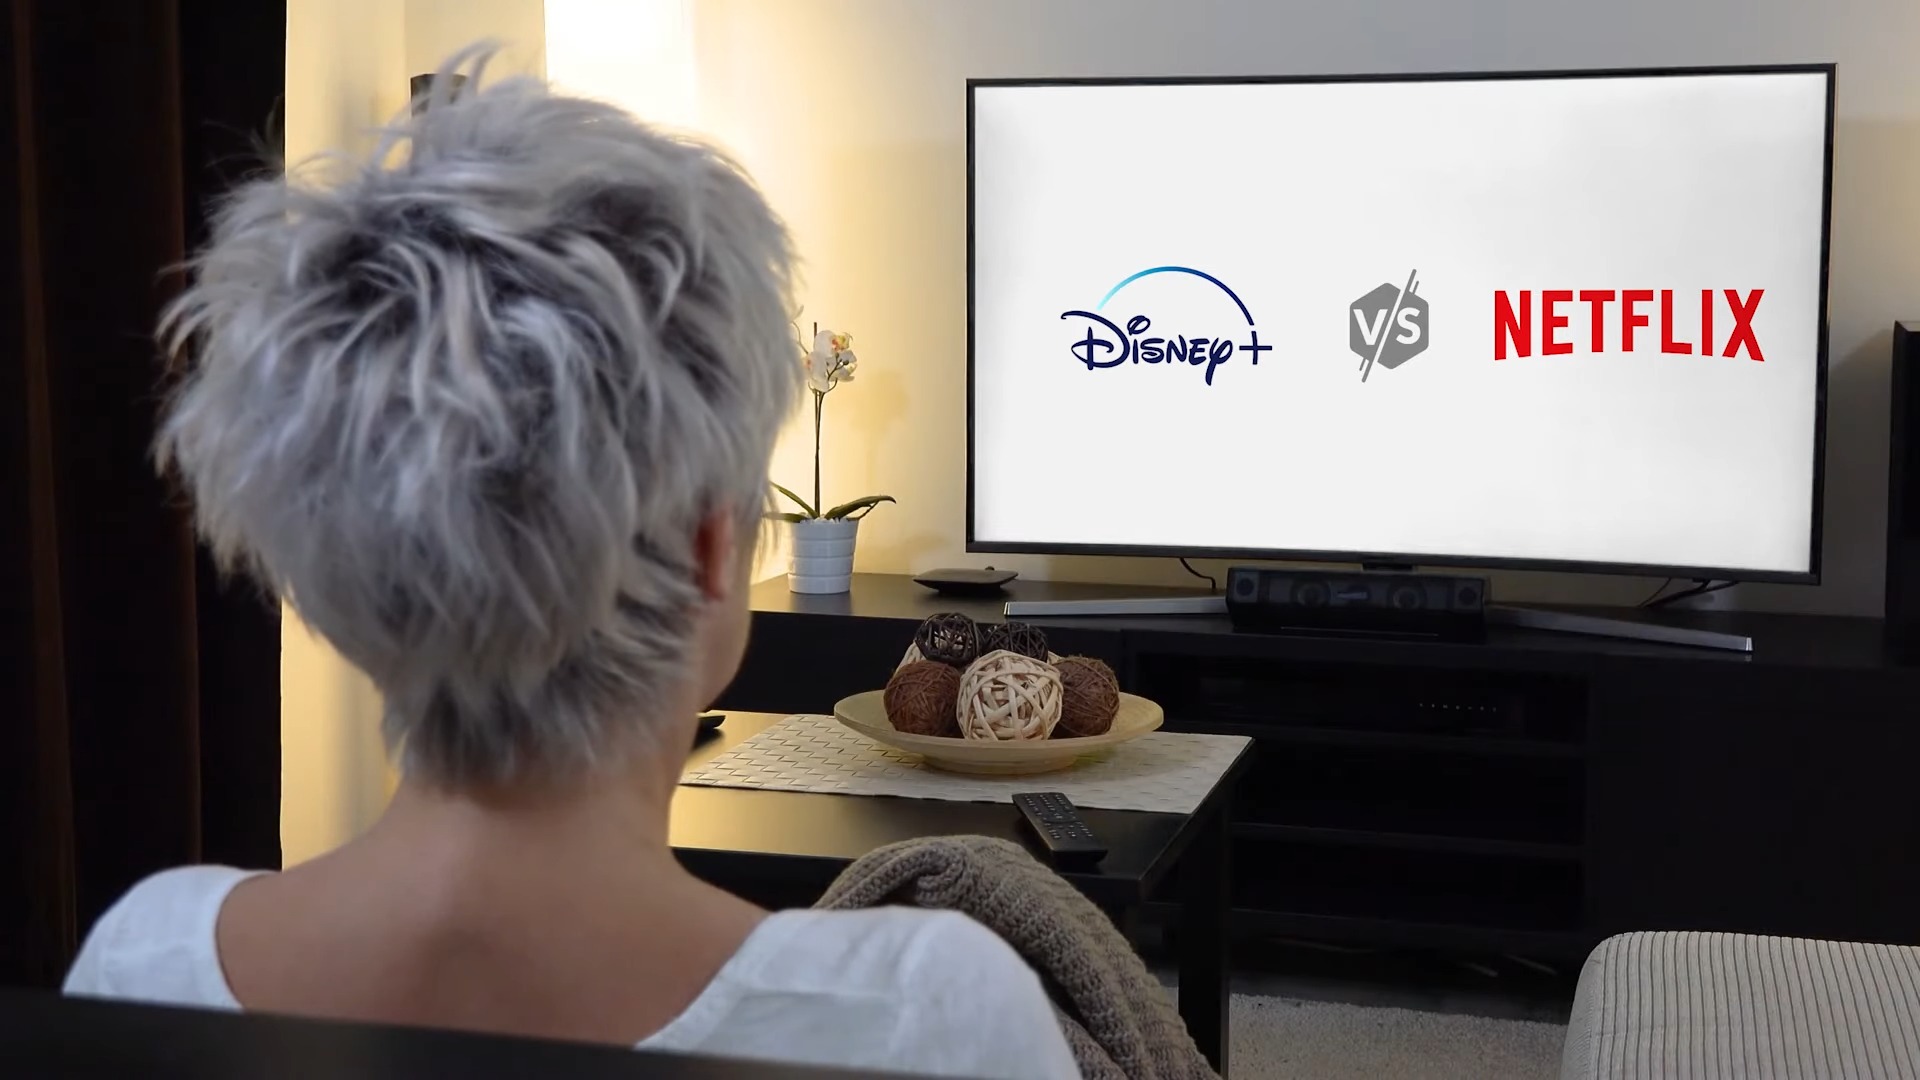 Netflix Vs Disney Plus Comparé: Lequel est meilleur?